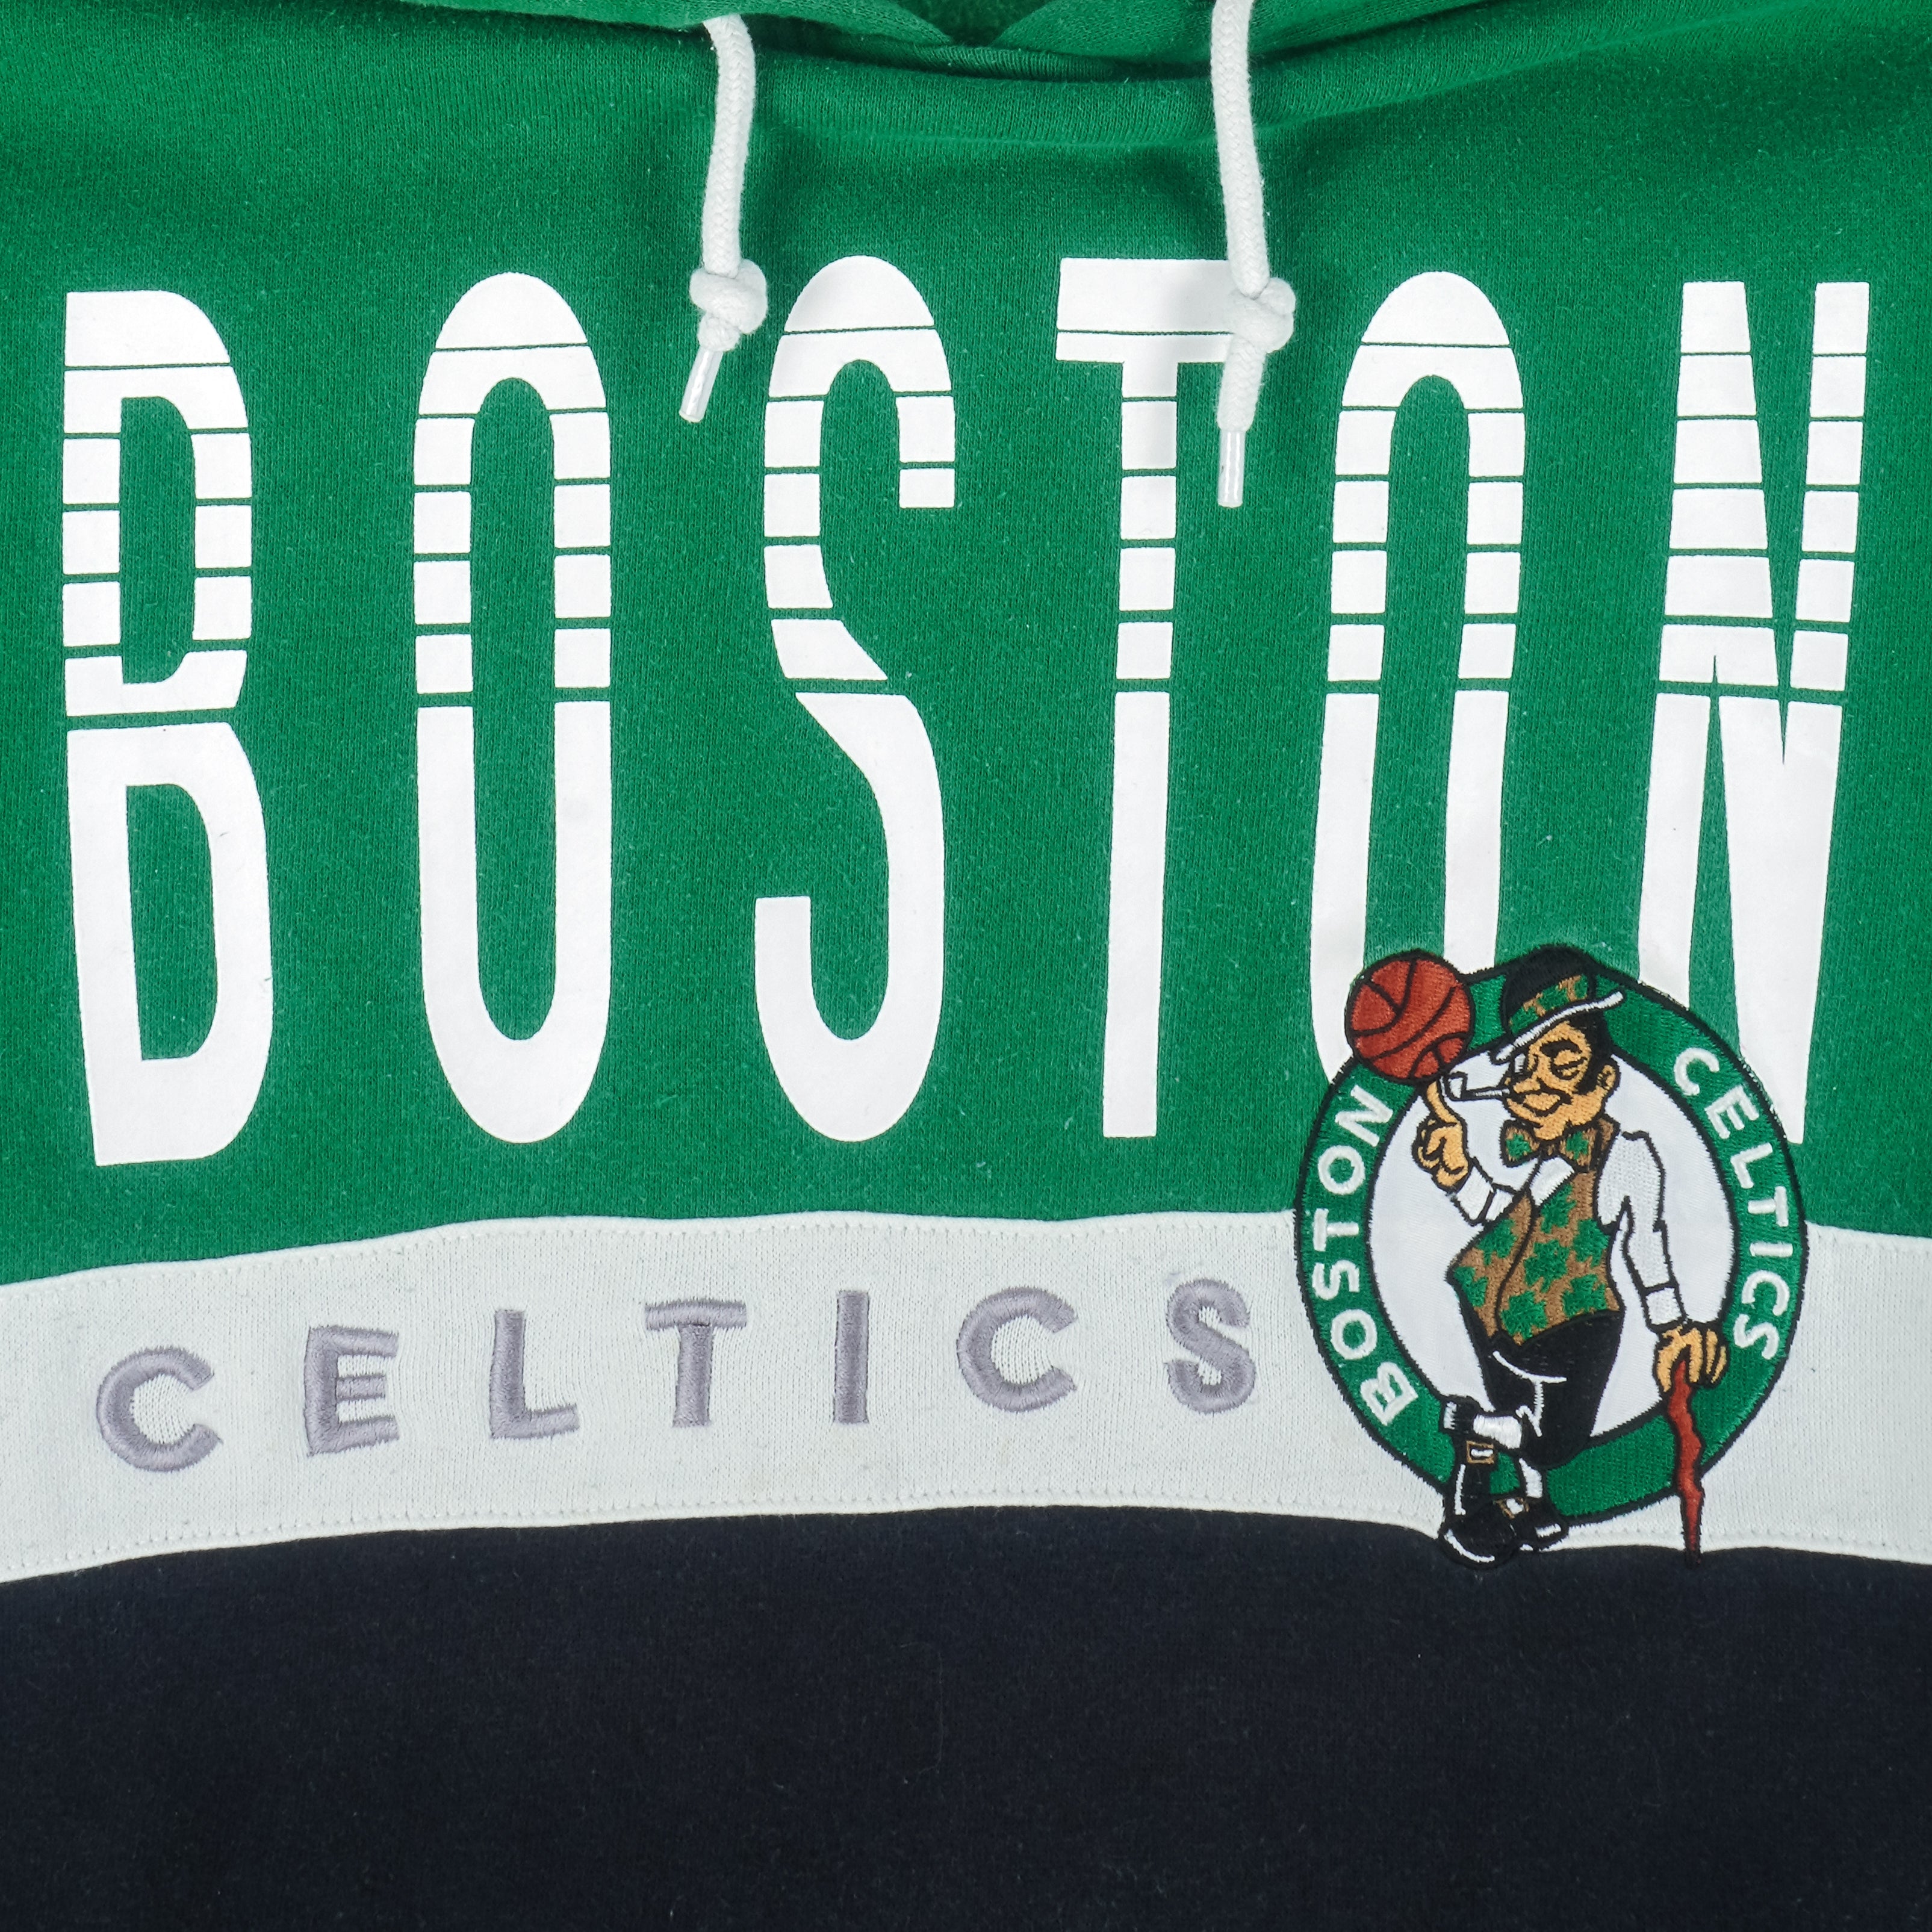 Vintage Adidas - Boston Celtics Embroidered Sweatshirt Large – Vintage Club  Clothing